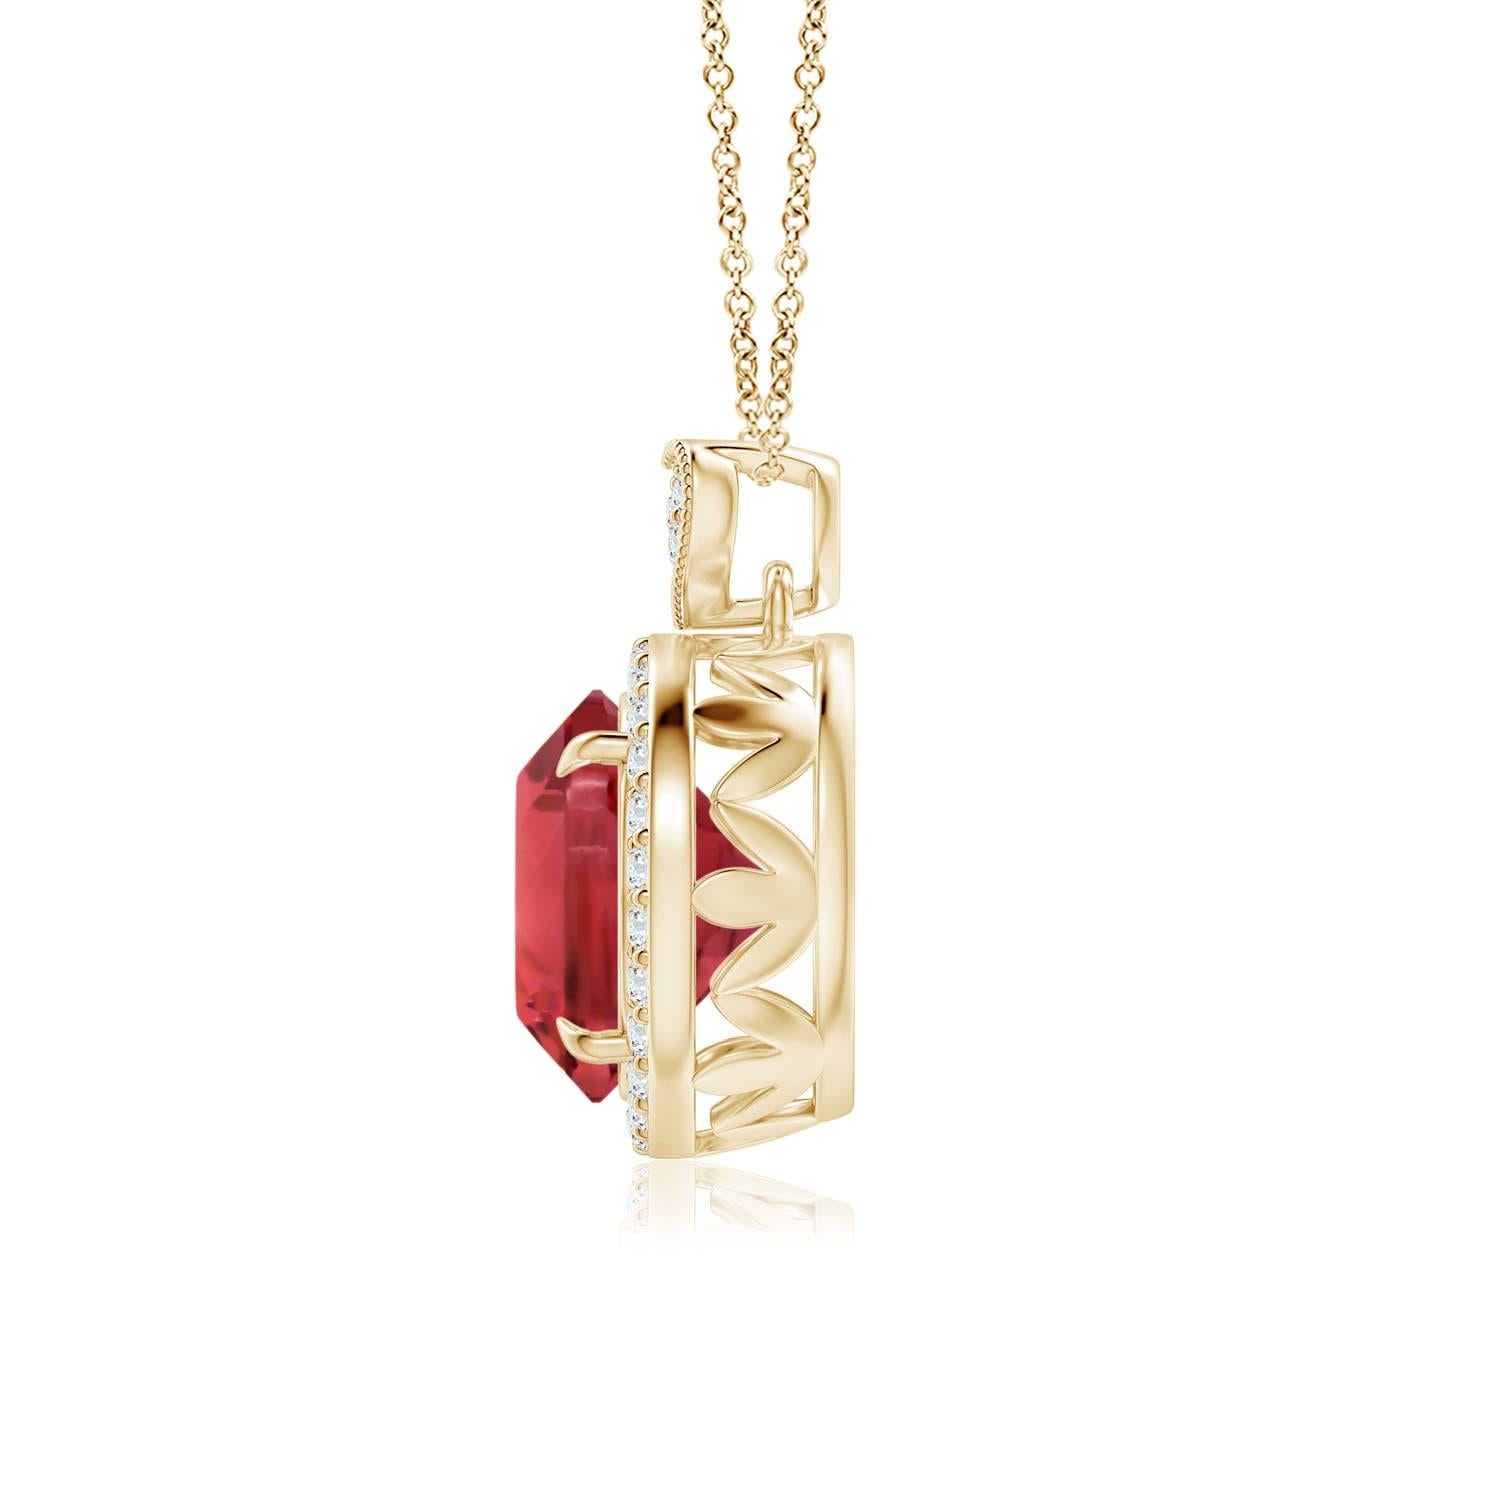 Embrassez votre côté romantique avec ce charmant pendentif en tourmaline rose, réalisé en or jaune 14 carats. La tourmaline rose certifiée par le GIA est sertie dans un halo de diamants étincelants. Il est surmonté d'une balle en forme de cœur